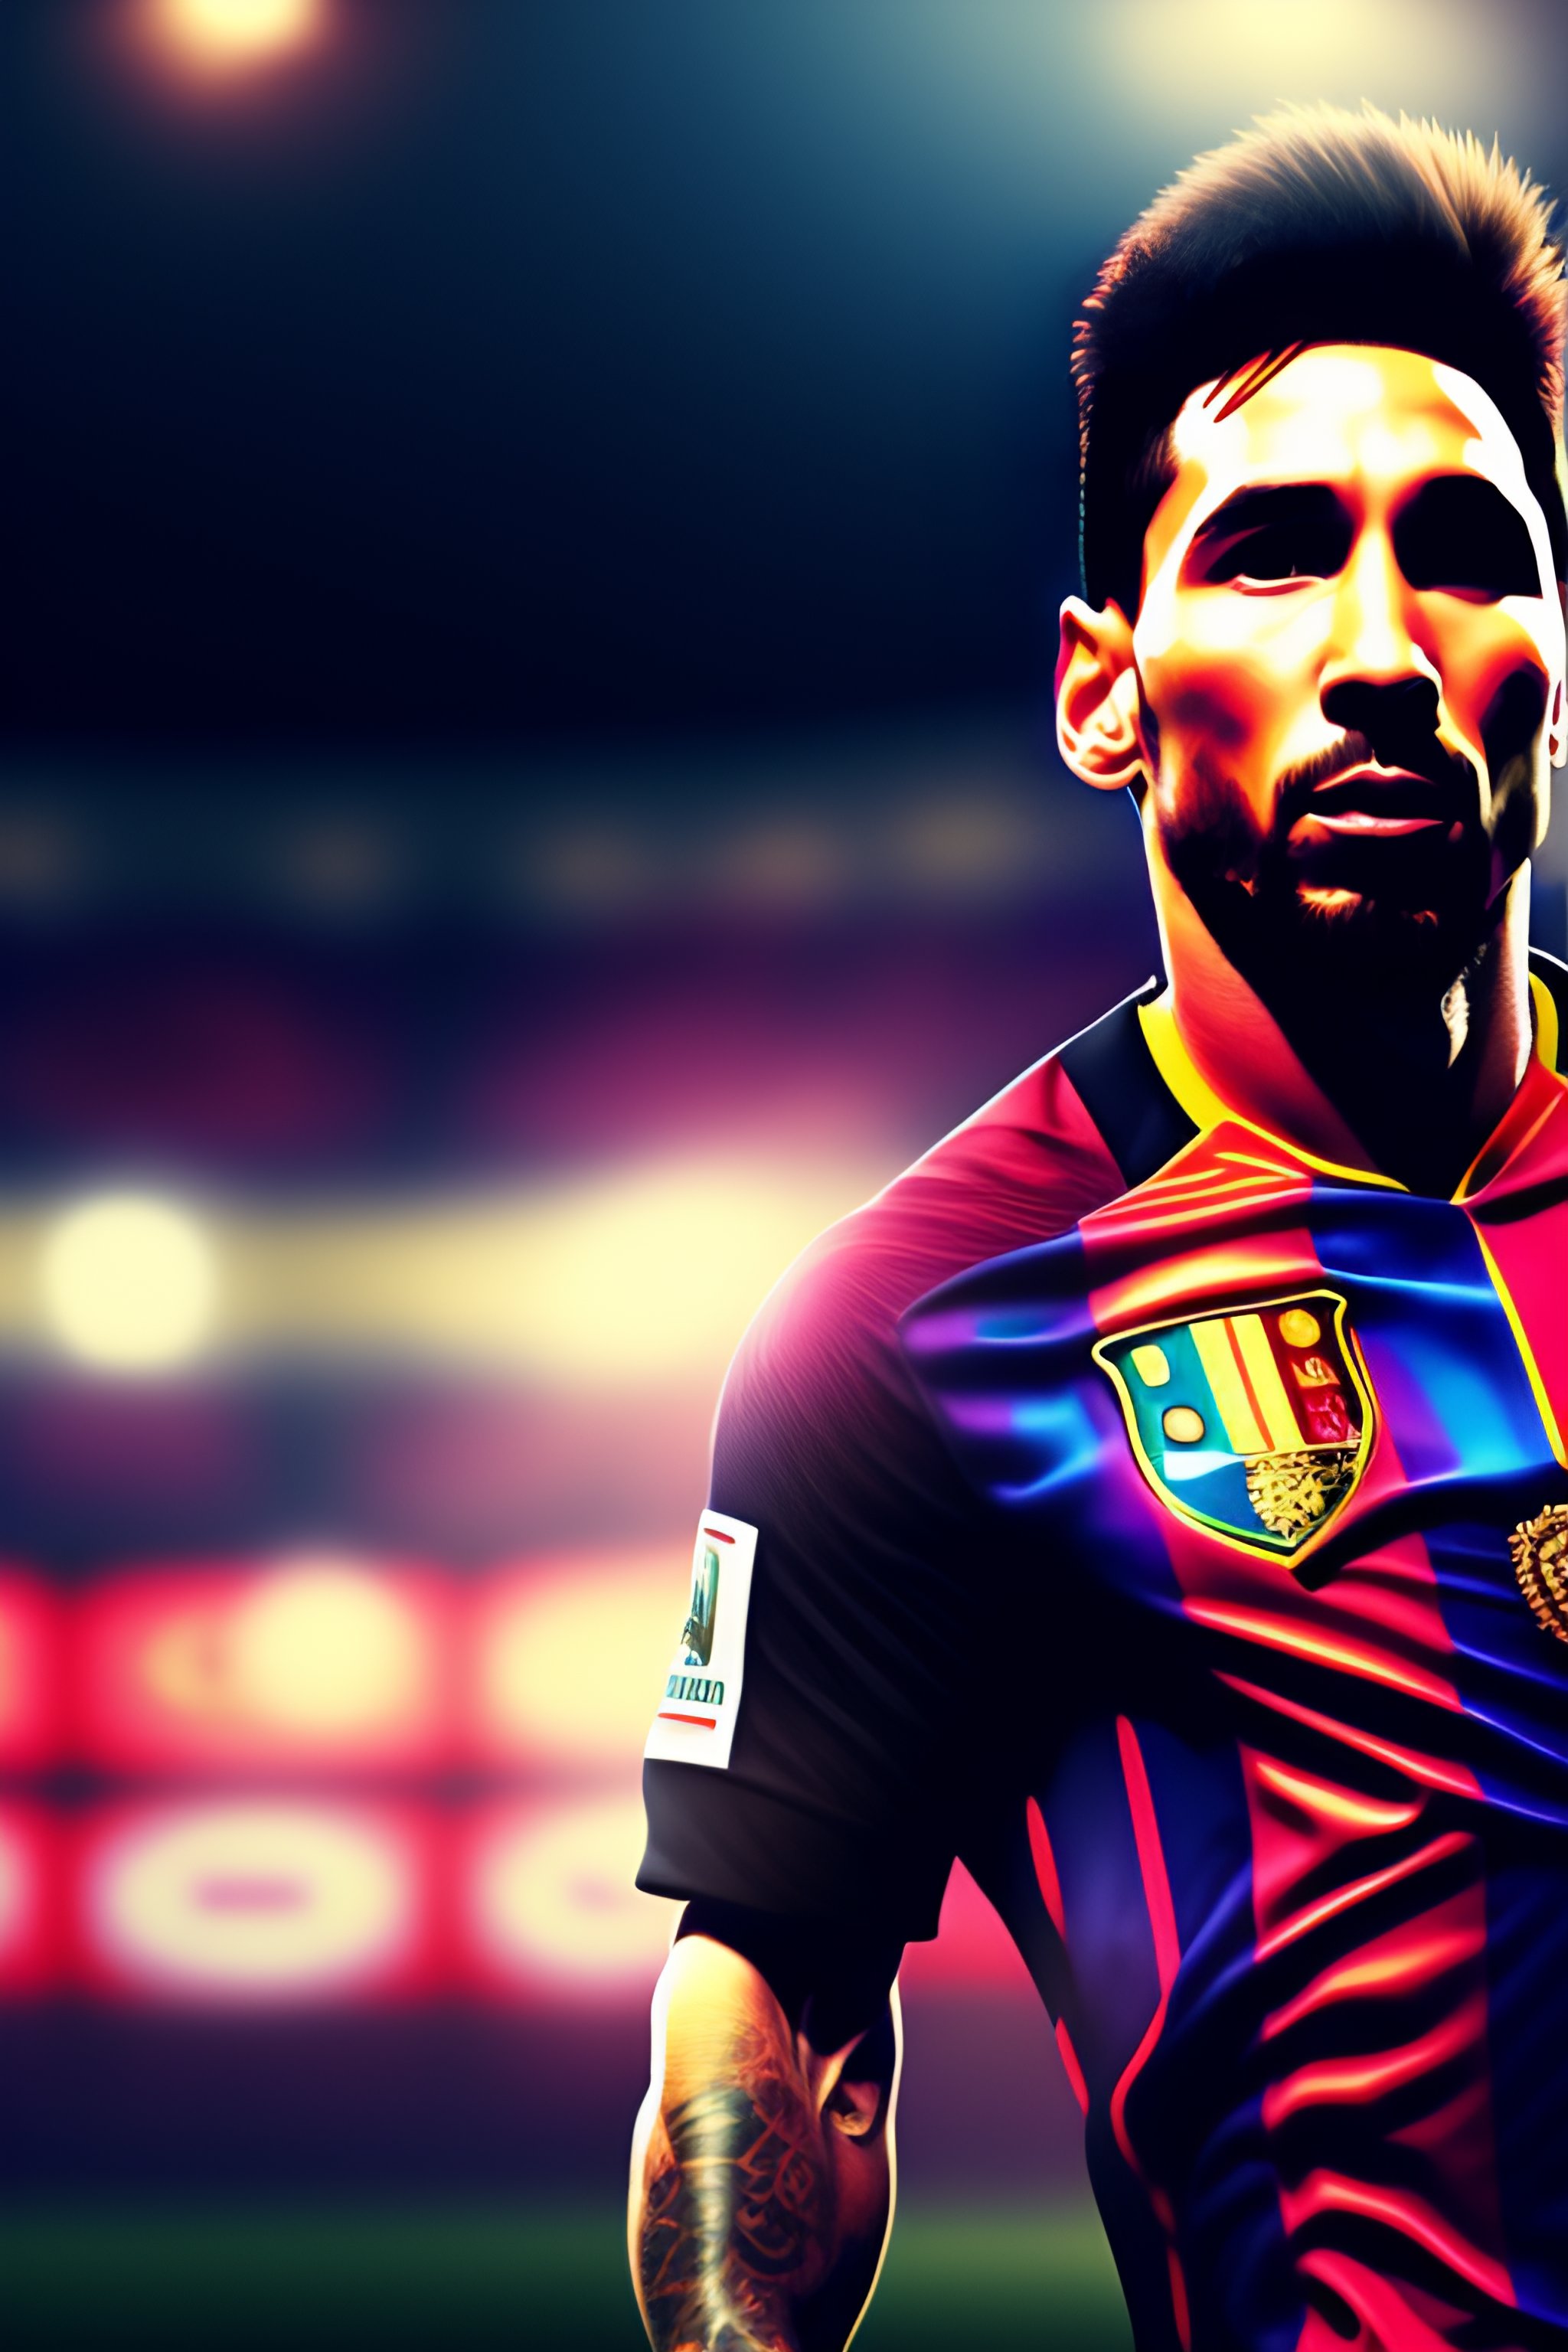 Hãy để đôi mắt của bạn được thưởng thức hình ảnh ngôi sao hàng đầu của bóng đá thế giới - Lionel Messi! Với sức mạnh và kỹ năng của mình, anh ta đã thăng hoa và trở thành một trong những người nổi tiếng nhất trong lịch sử bóng đá. Hãy để mình bị thu hút bởi những khoảnh khắc ấn tượng của anh chàng Messi!